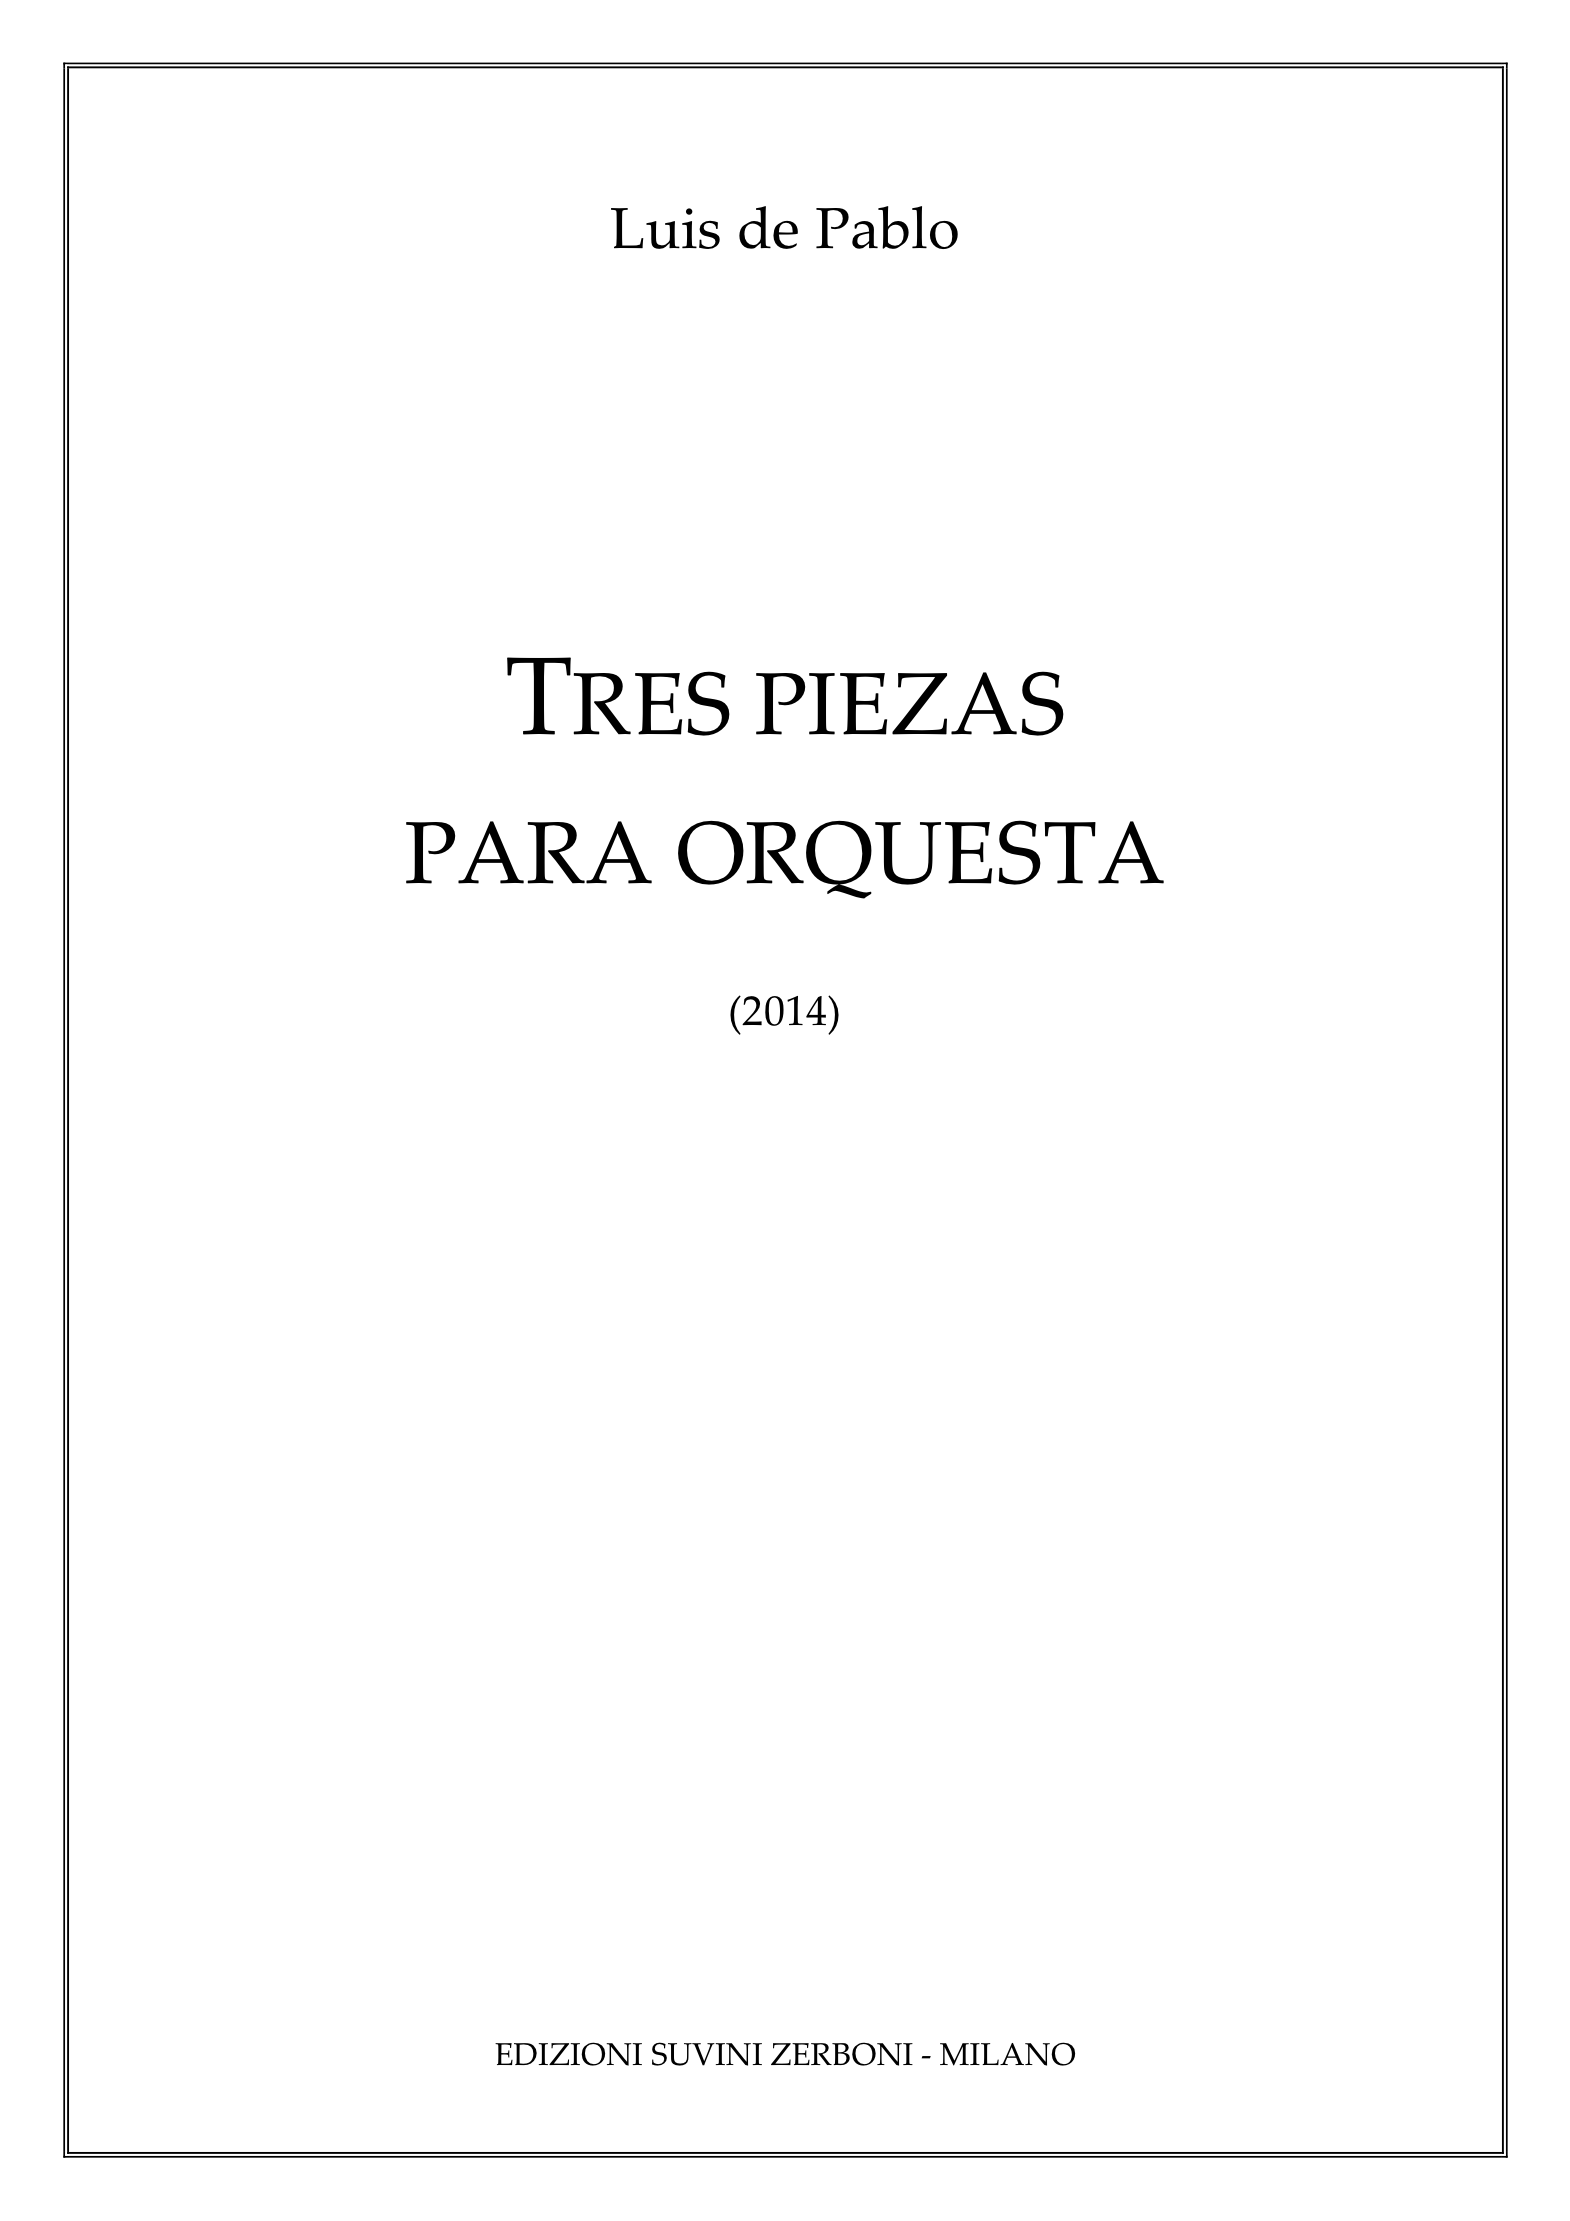 Tres Piezas para orquesta_De Pablo 1